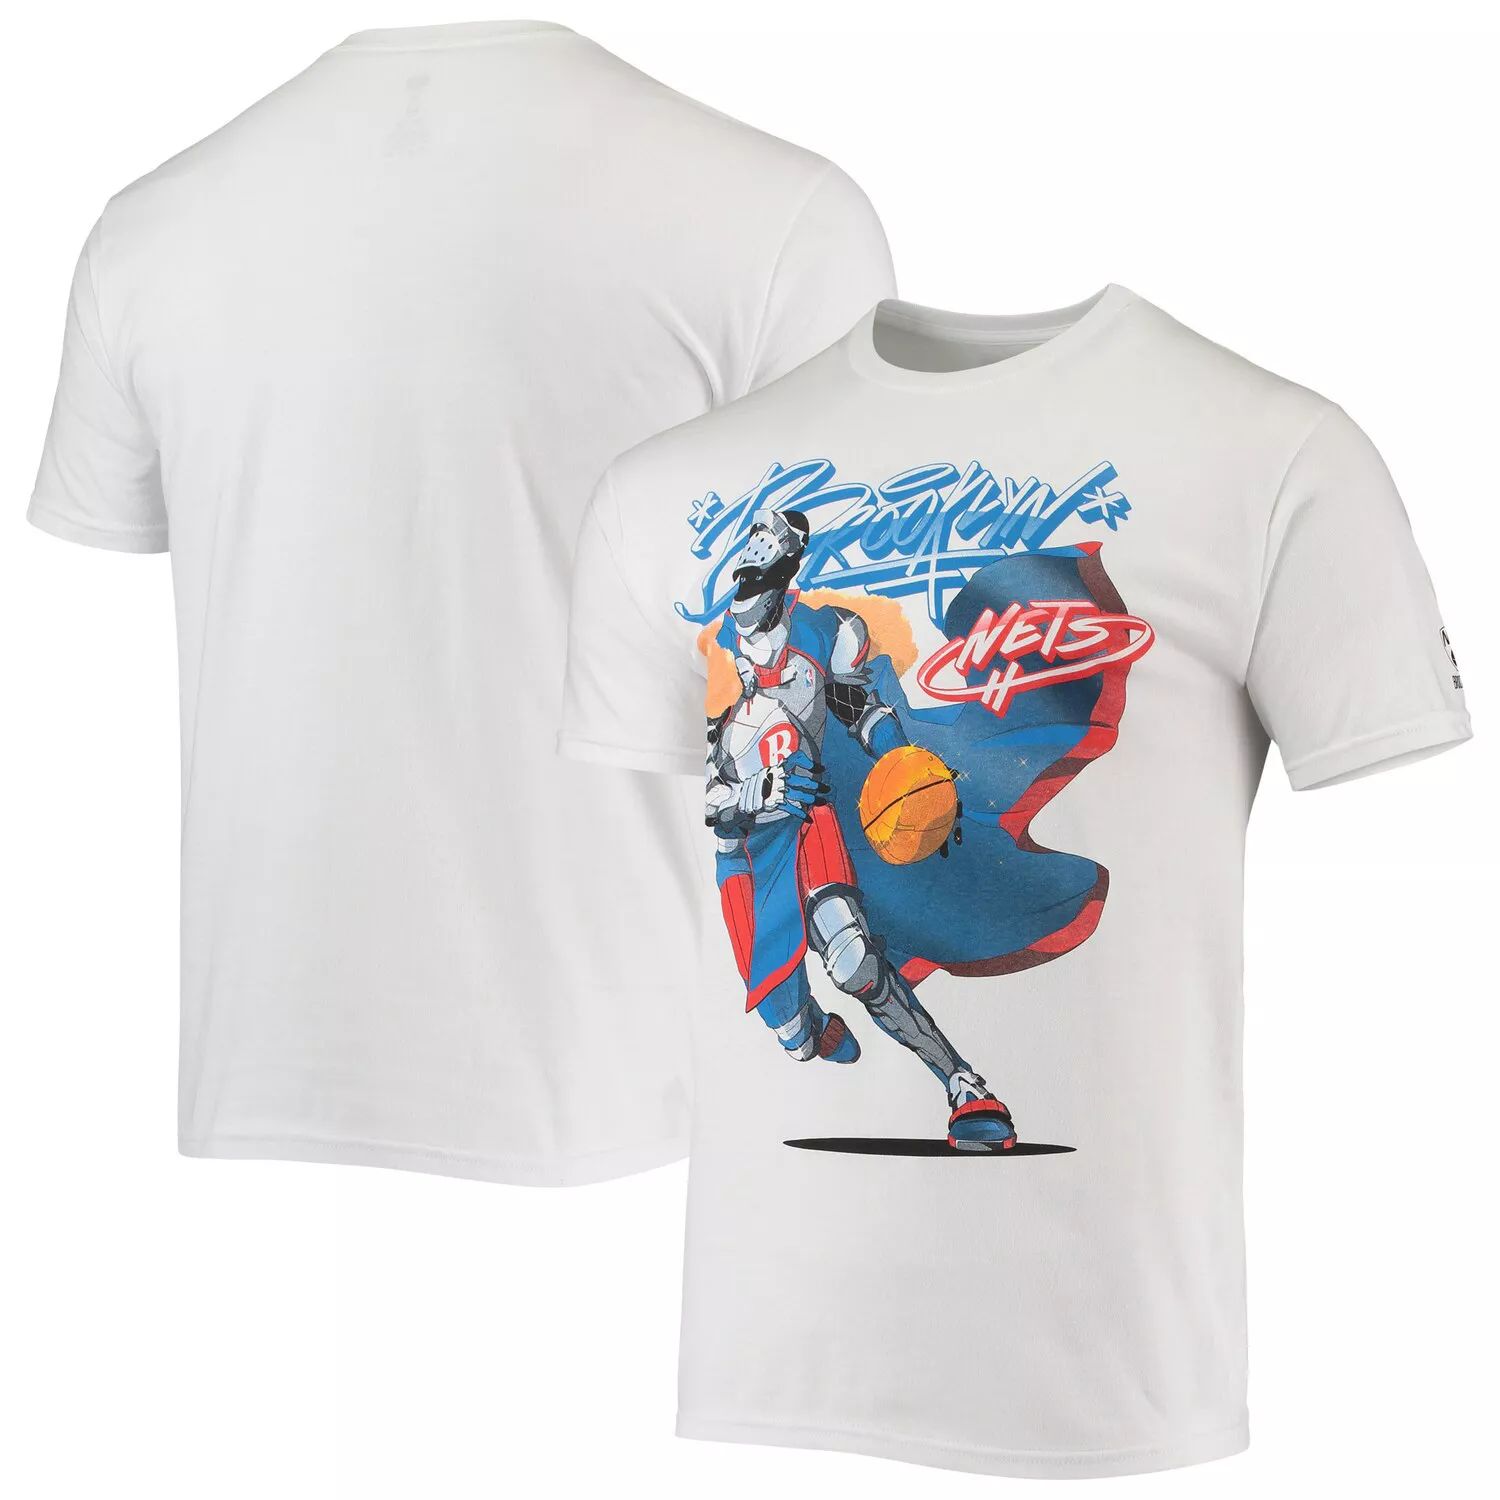 Мужская белая футболка NBA x McFlyy Brooklyn Nets из серии Artist мужская футболка nba x mcflyy black brooklyn nets identify artist series nba exclusive collection черный